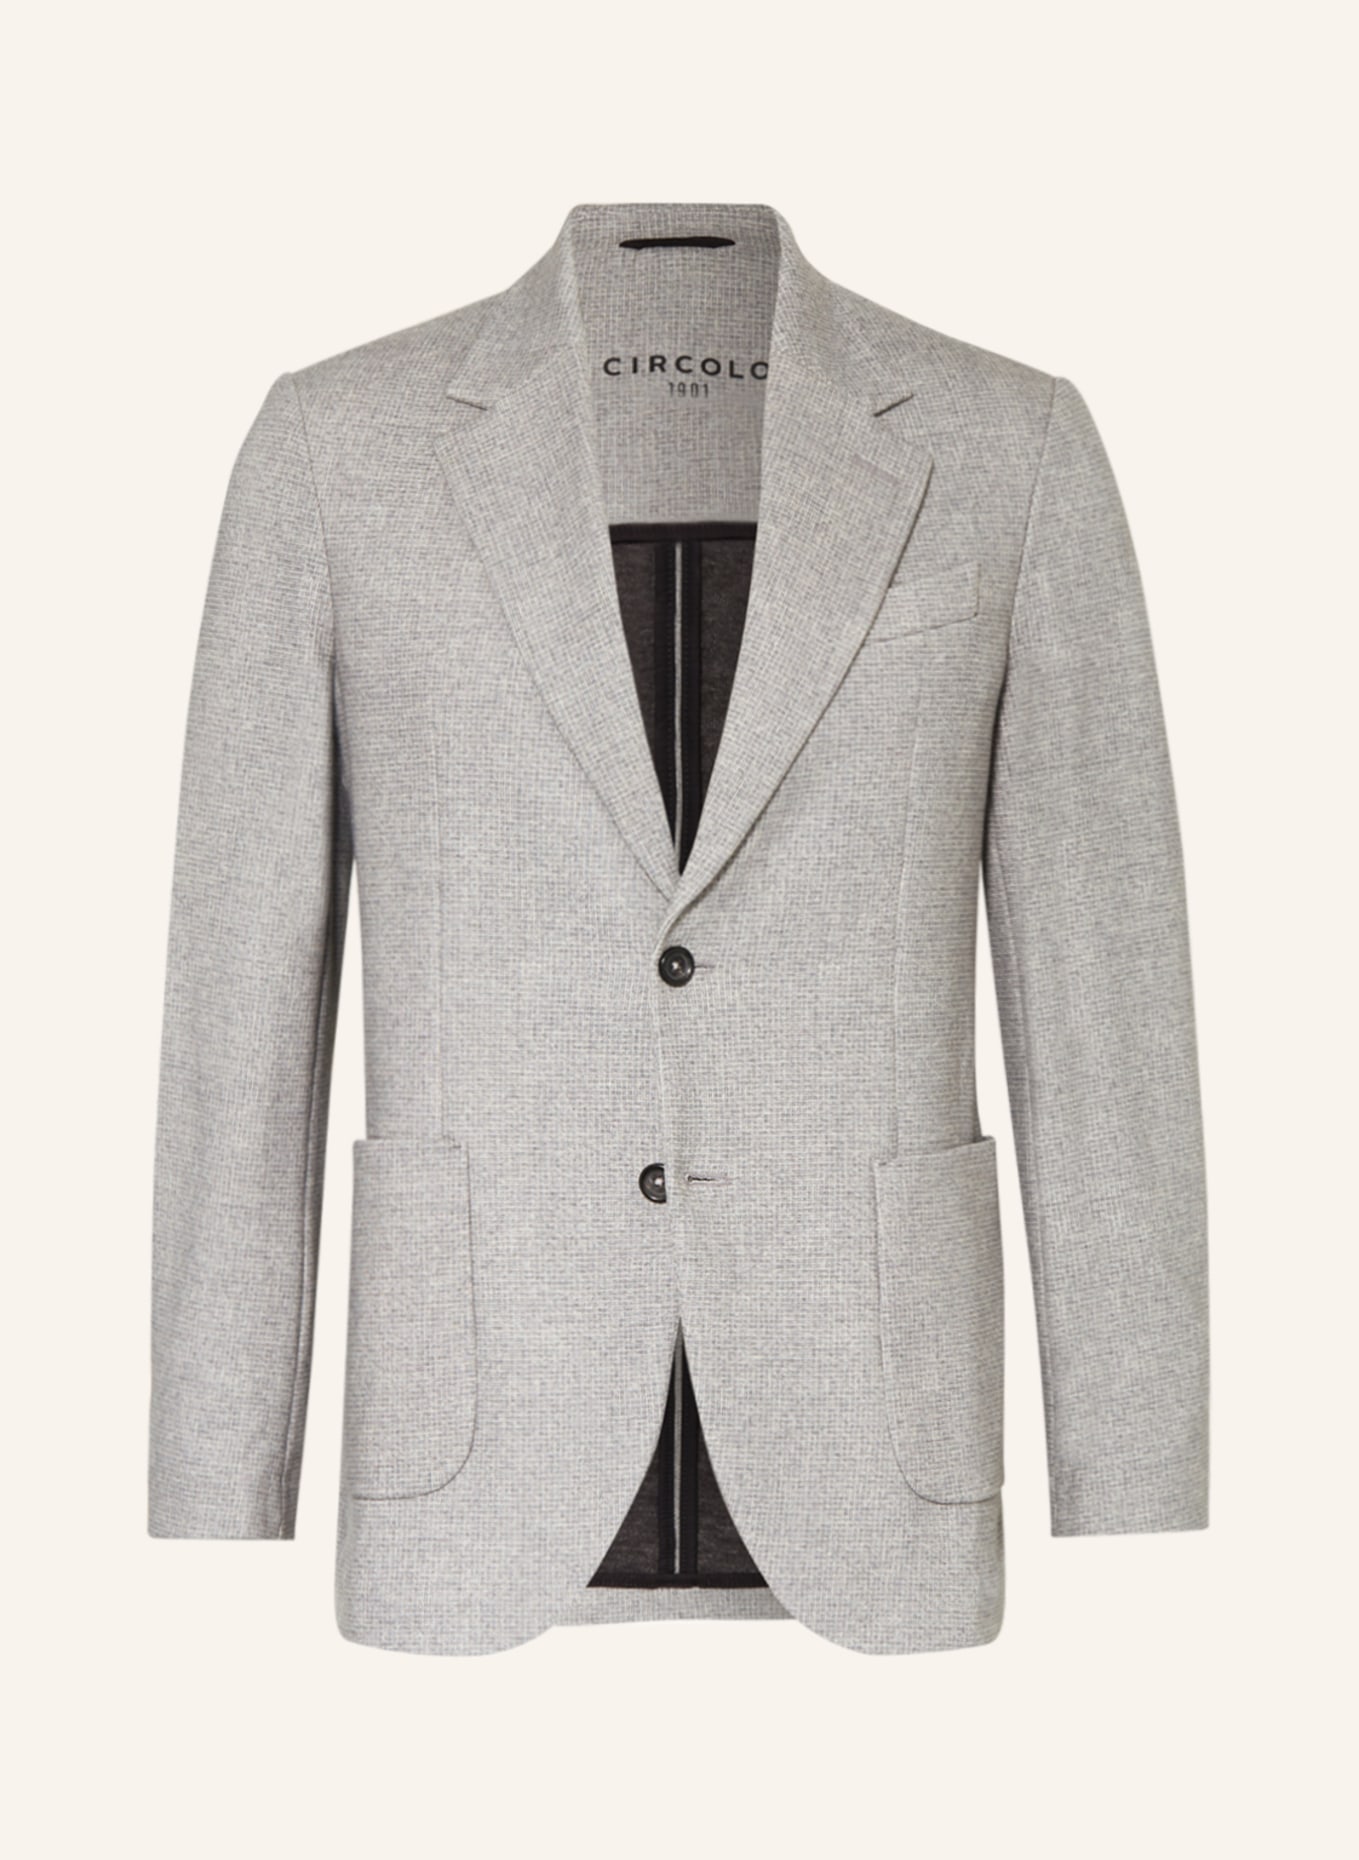 CIRCOLO 1901 Suit jacket Slim Fit, Color: GRAY GRAY-L (Image 1)